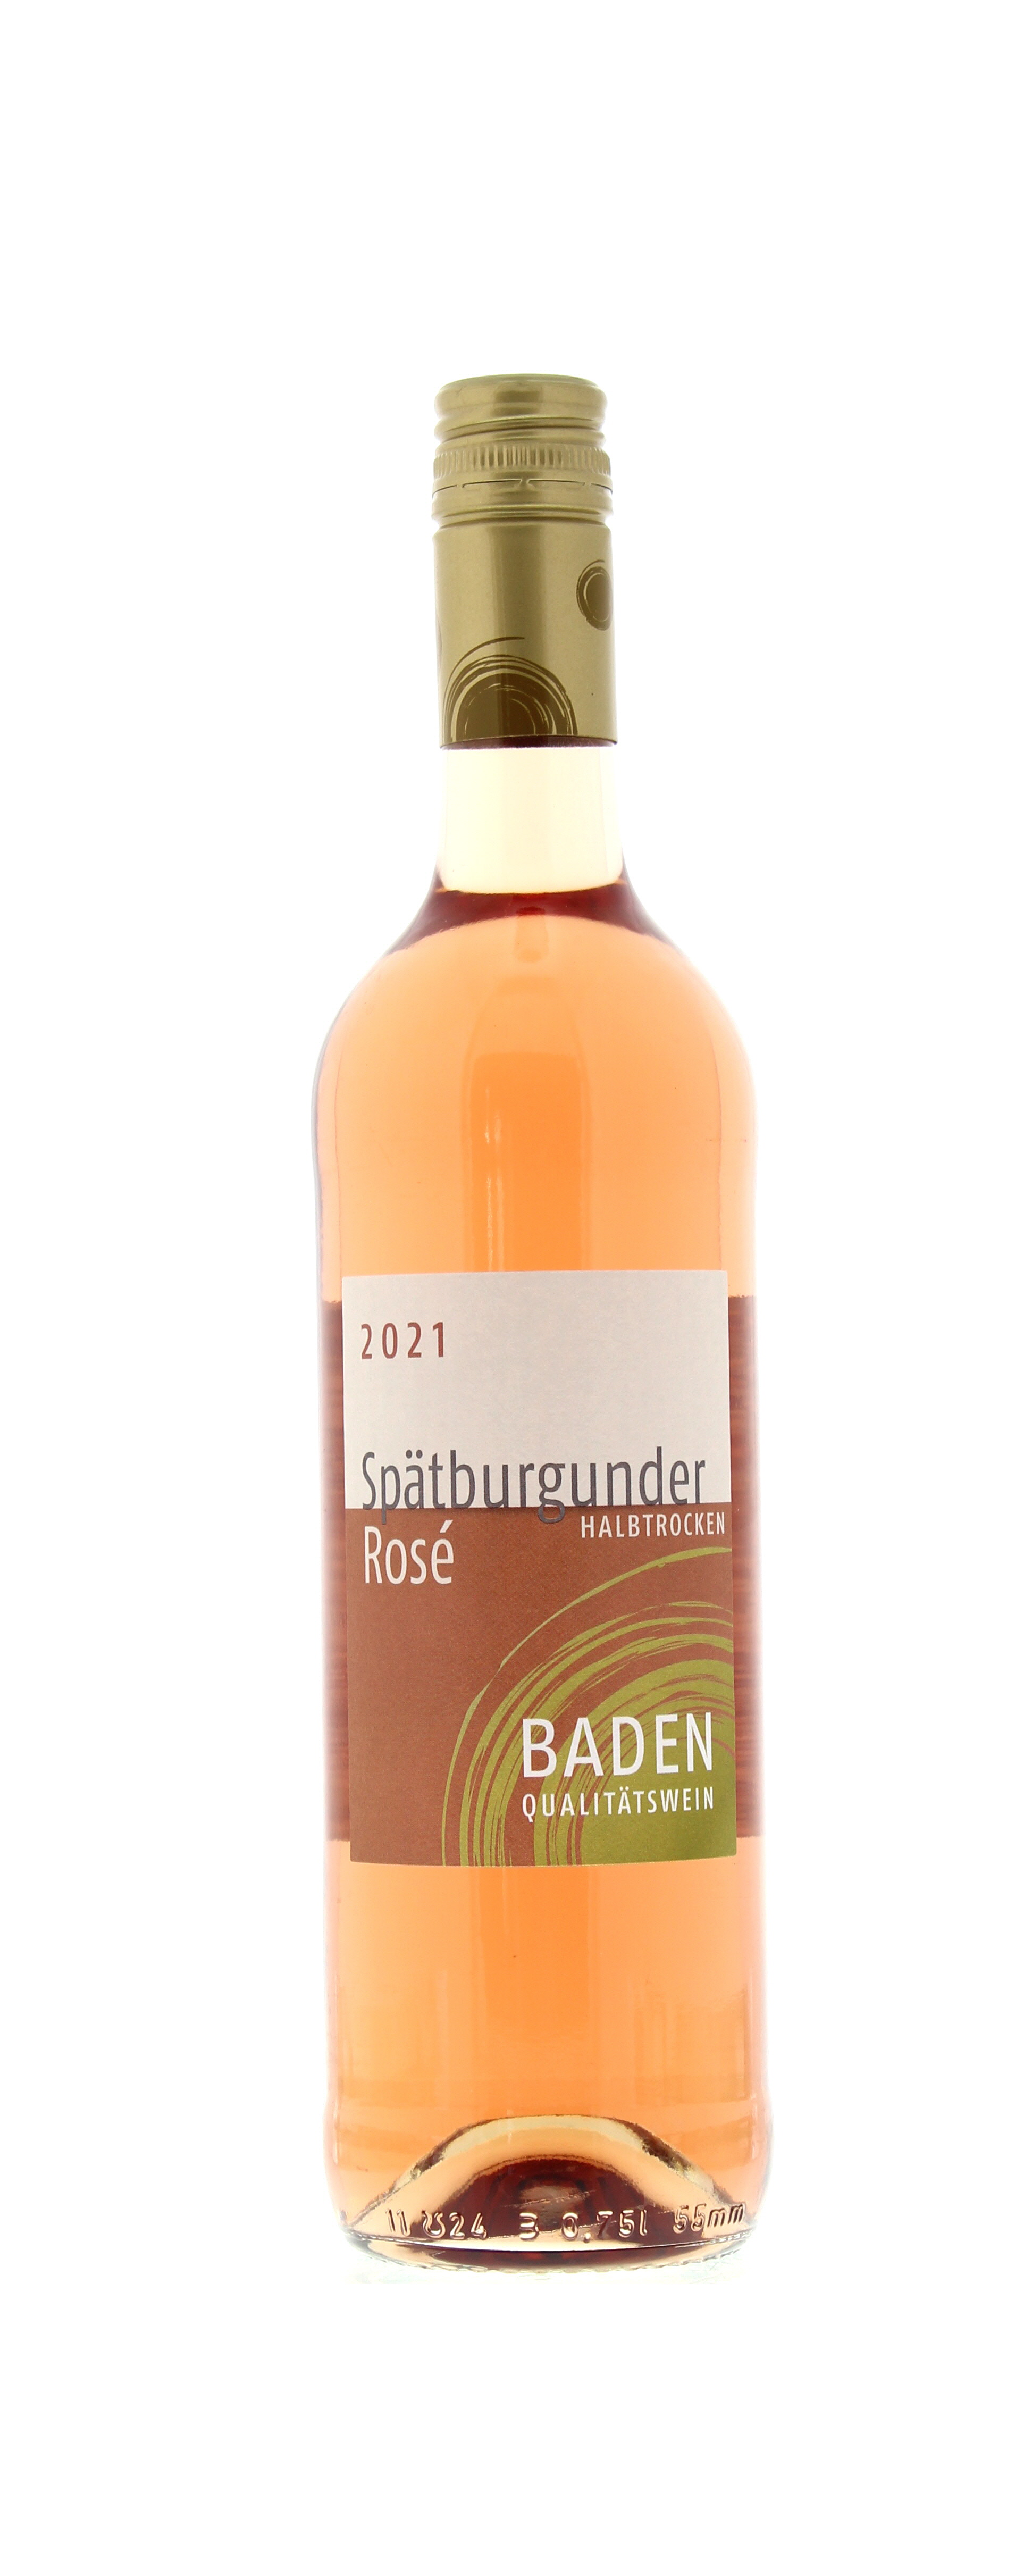 2021 Baden Spätburgunder - Rosé 0,75 Wein-App l Qualitätswein halbtrocken Flasche PENNY Mobile